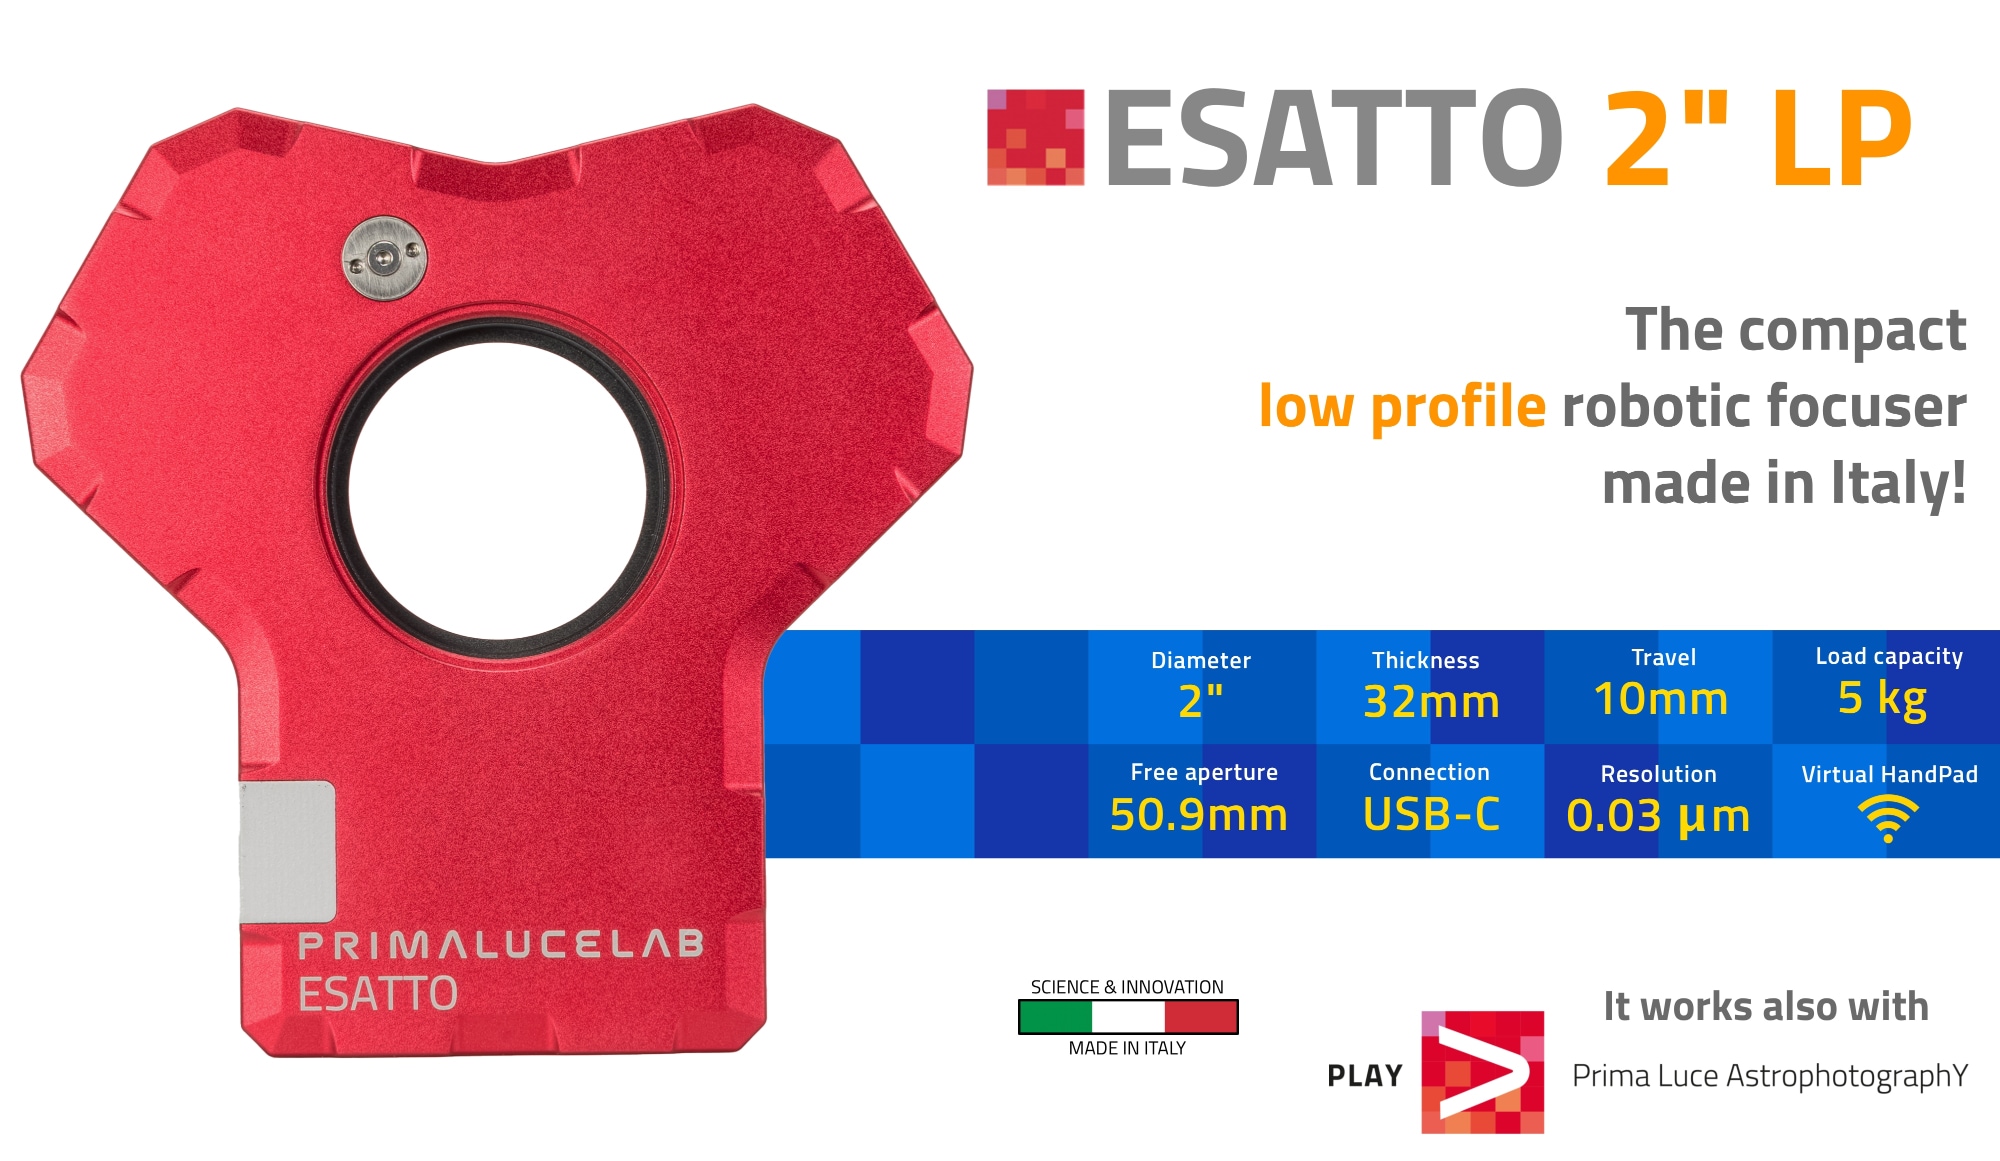 ESATTO 2 LP low profile robotic focuser